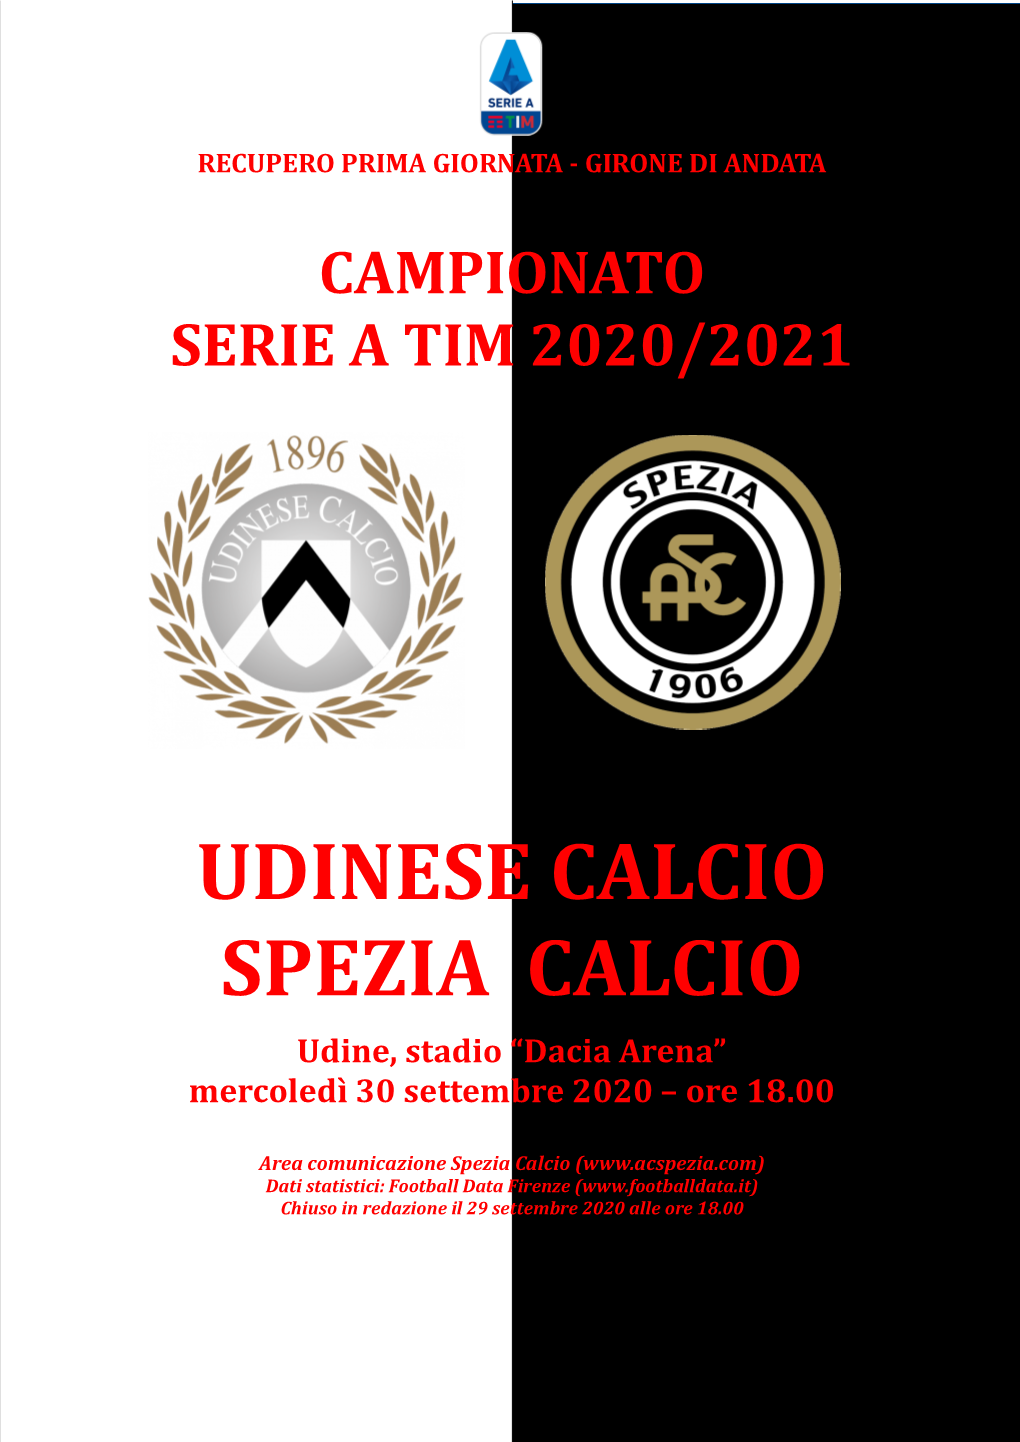 Udinese Calcio Spezia Calcio